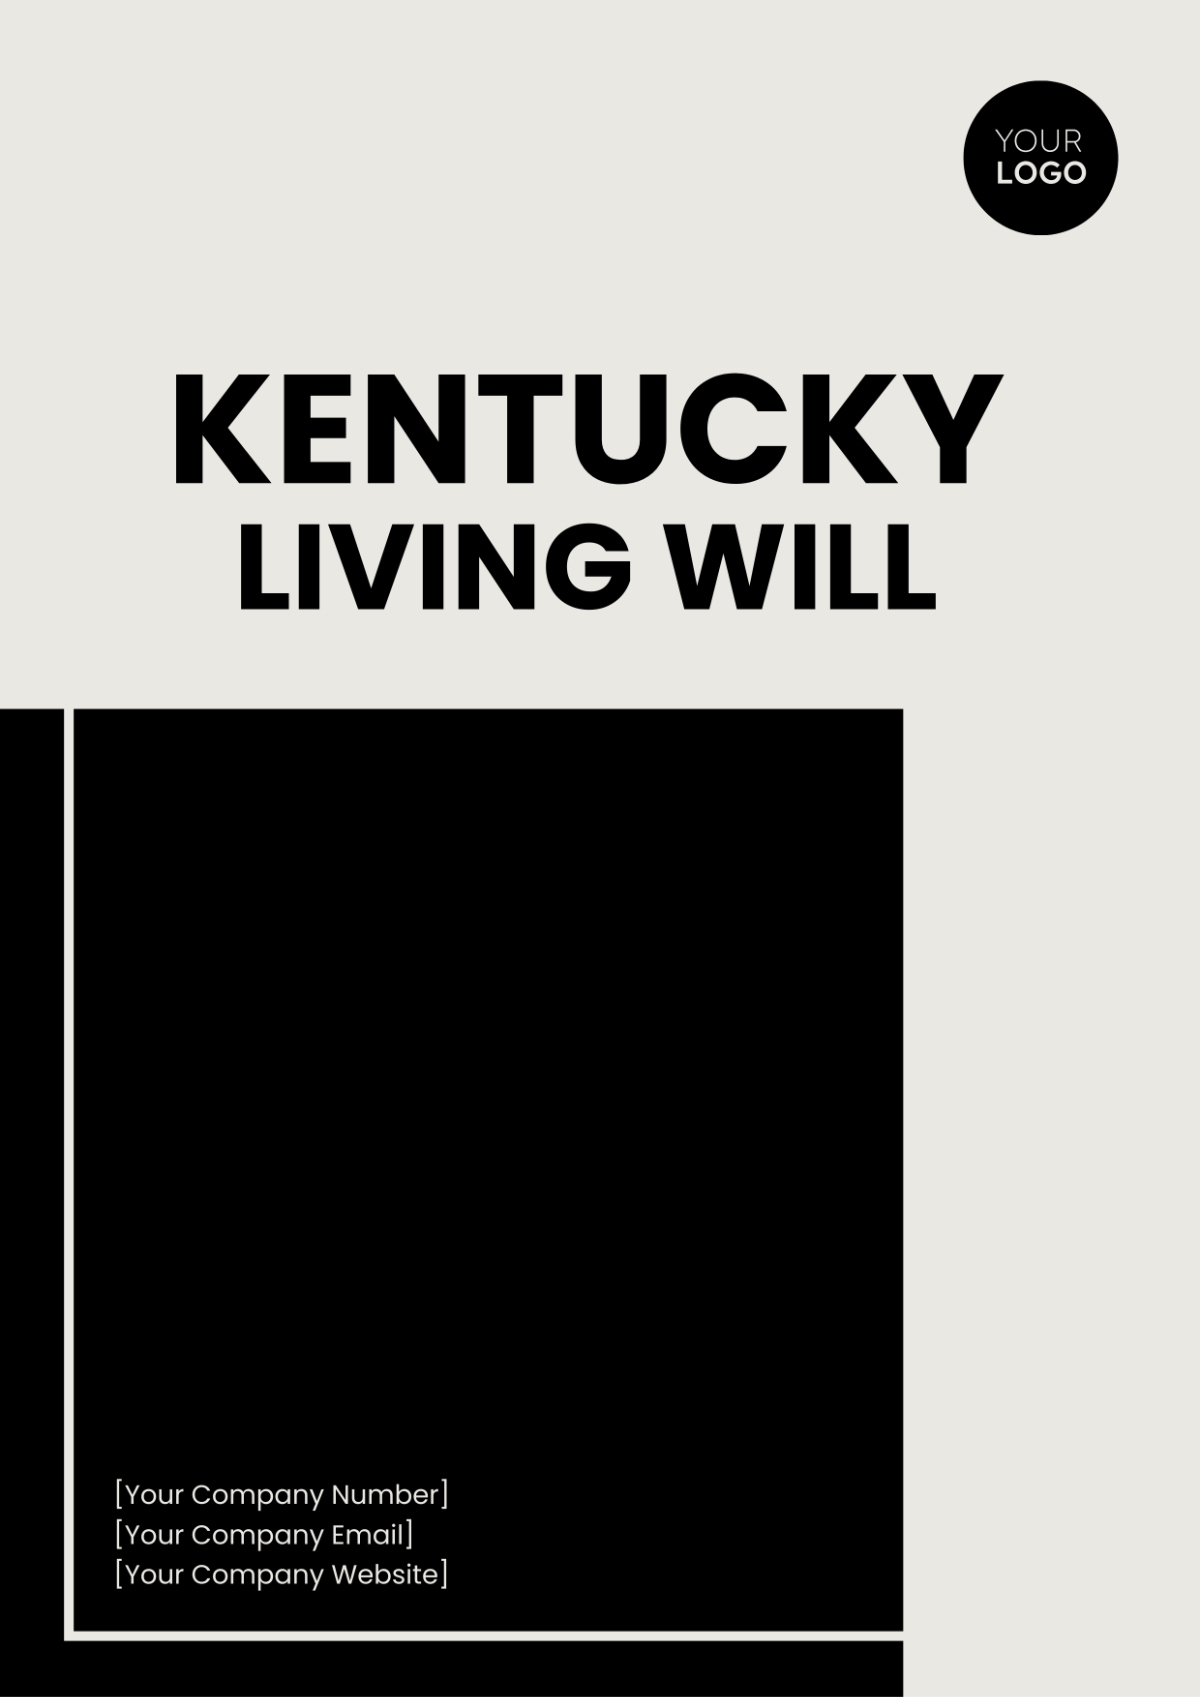 Kentucky Living Will Template